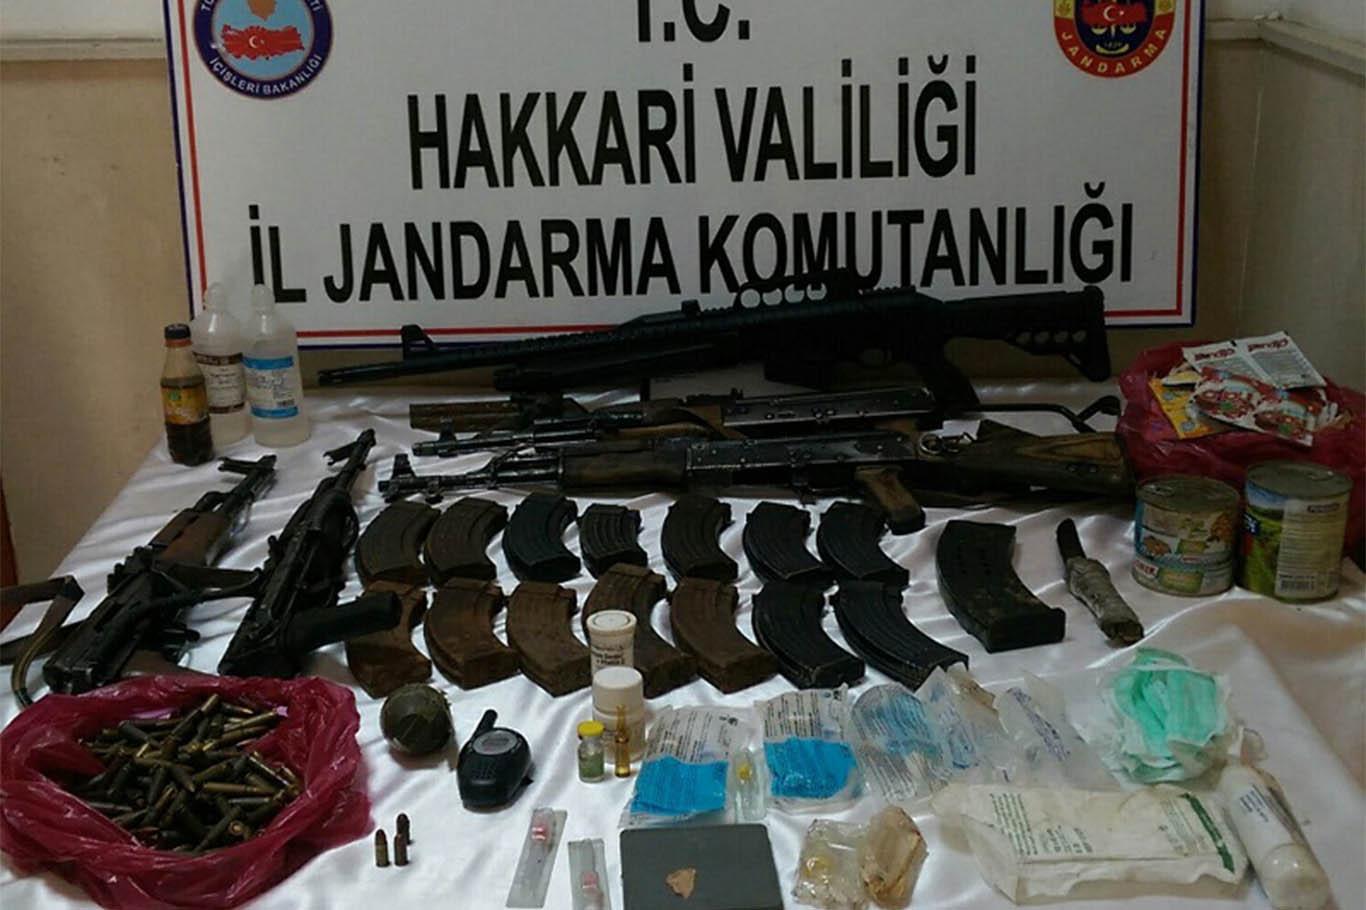 PKK operasyonunda mühimmat ve eroin ele geçirildi